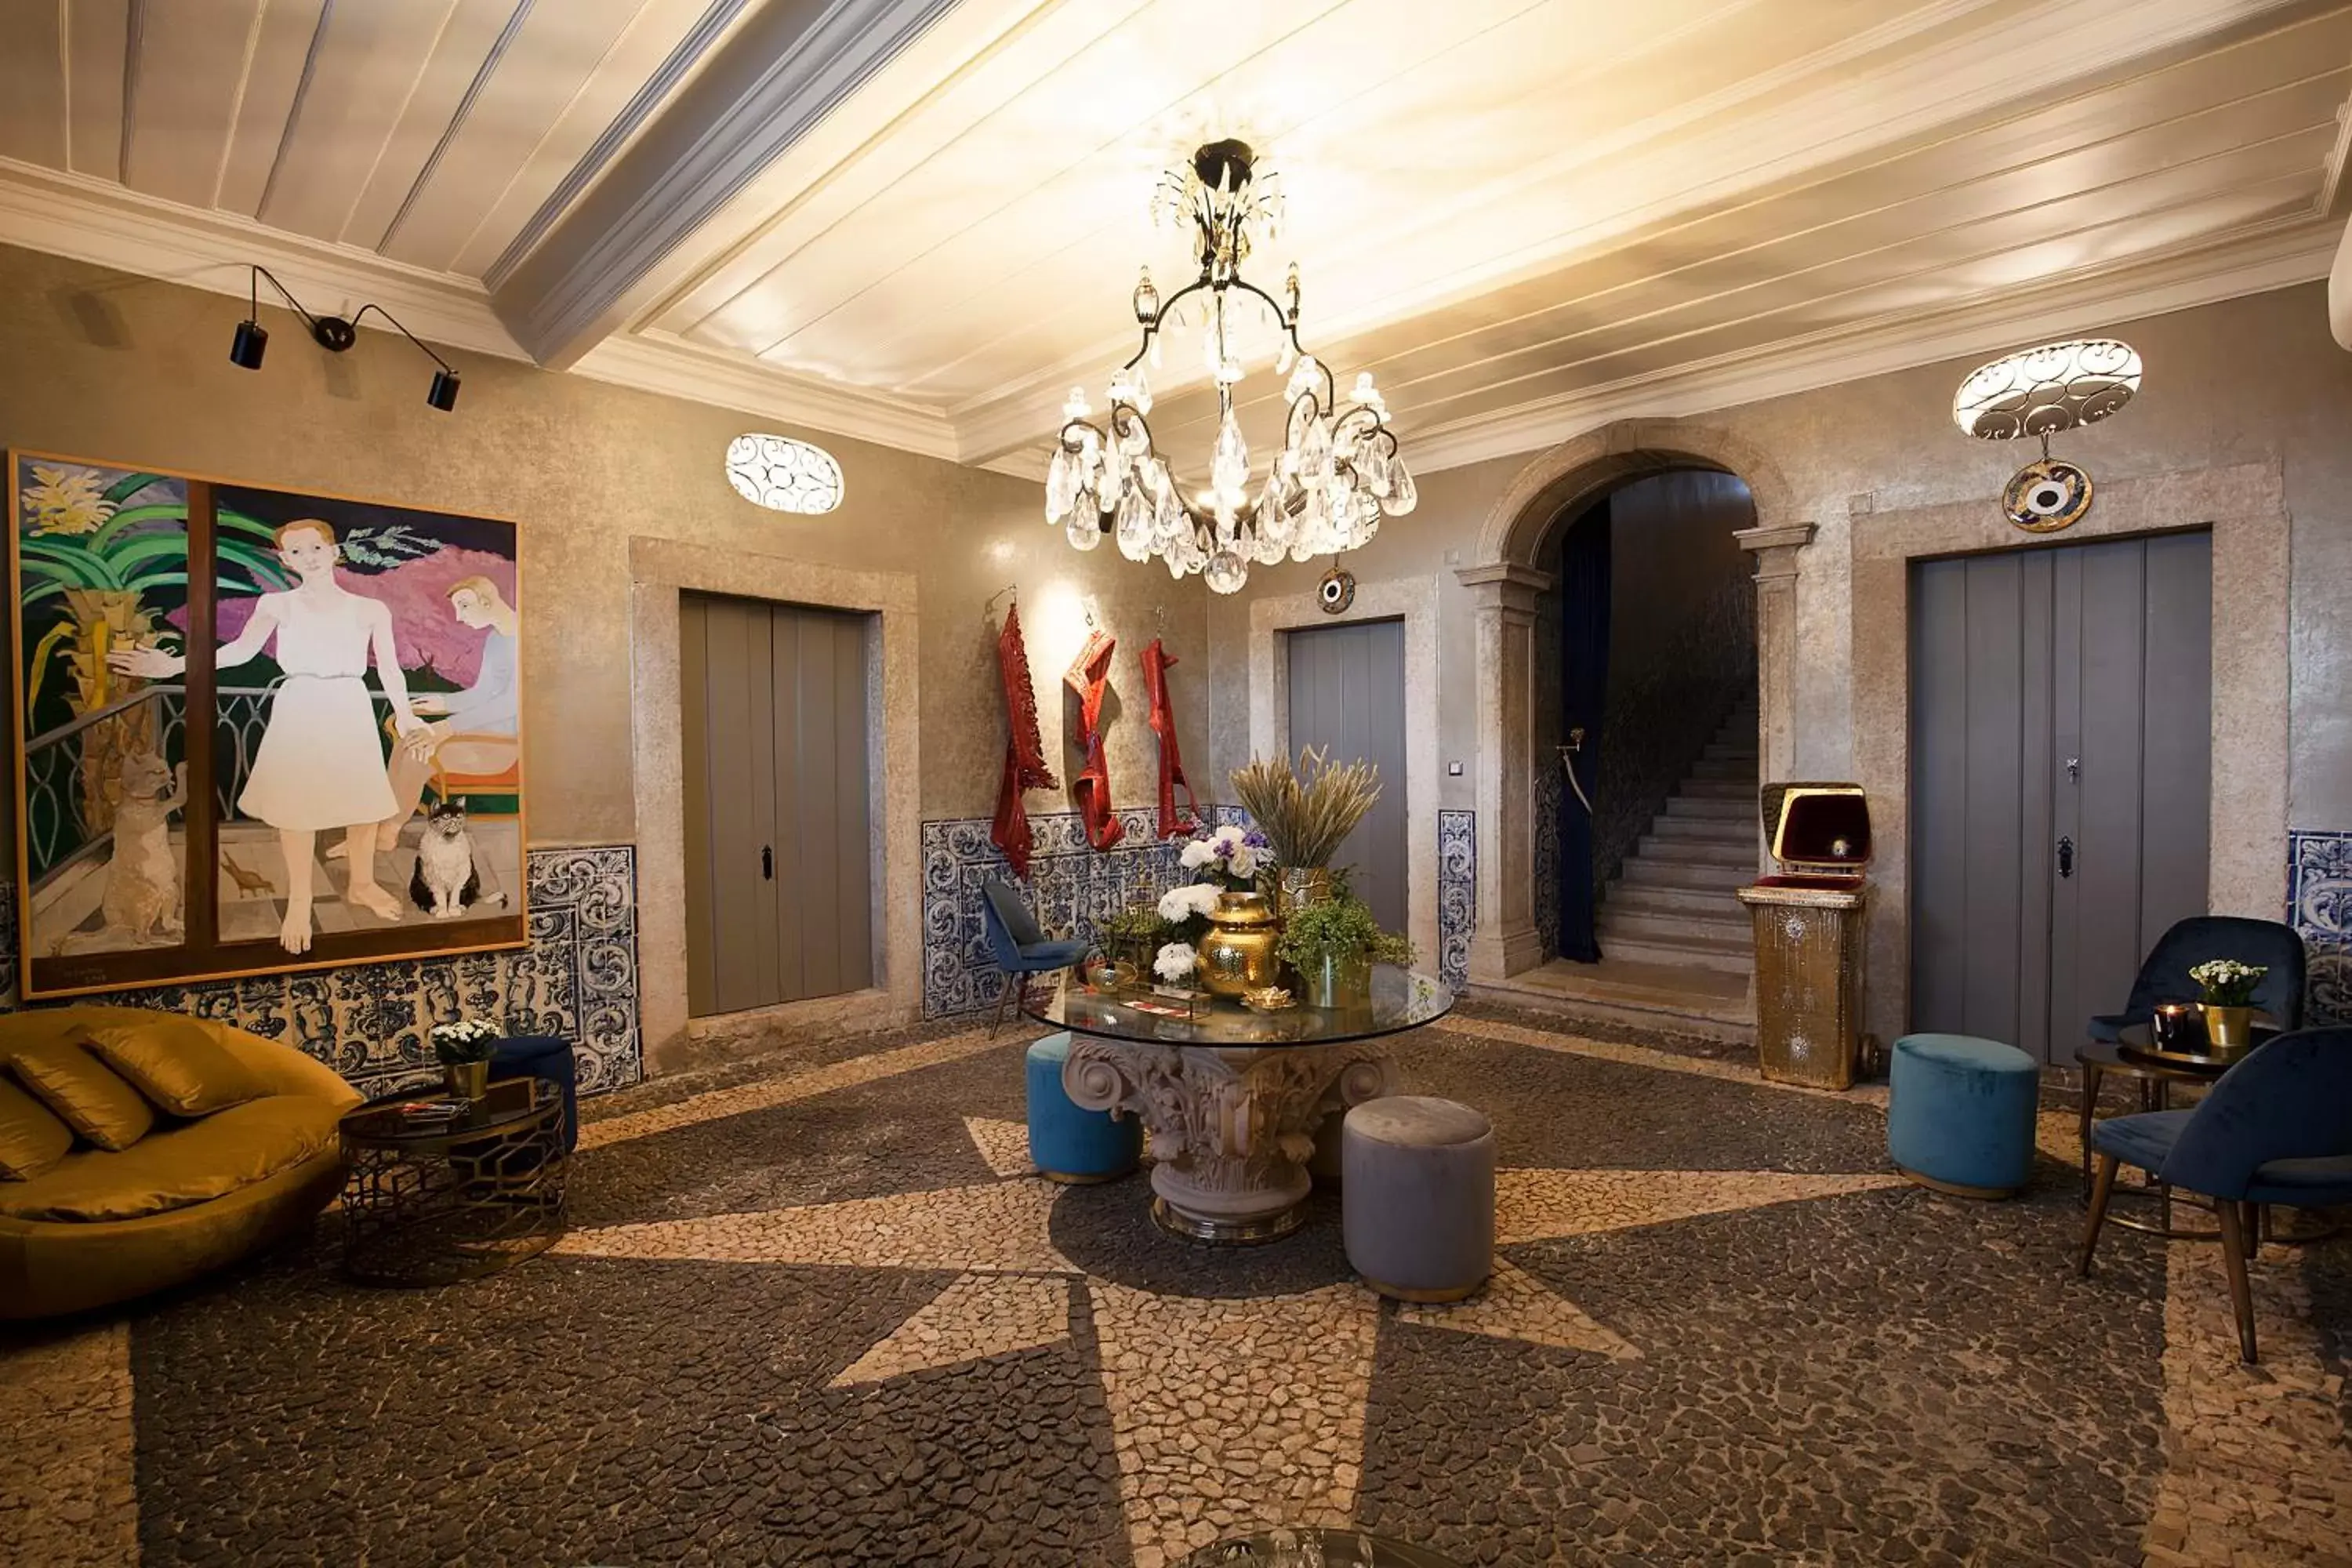 Area and facilities in Casa dell'Arte Club House